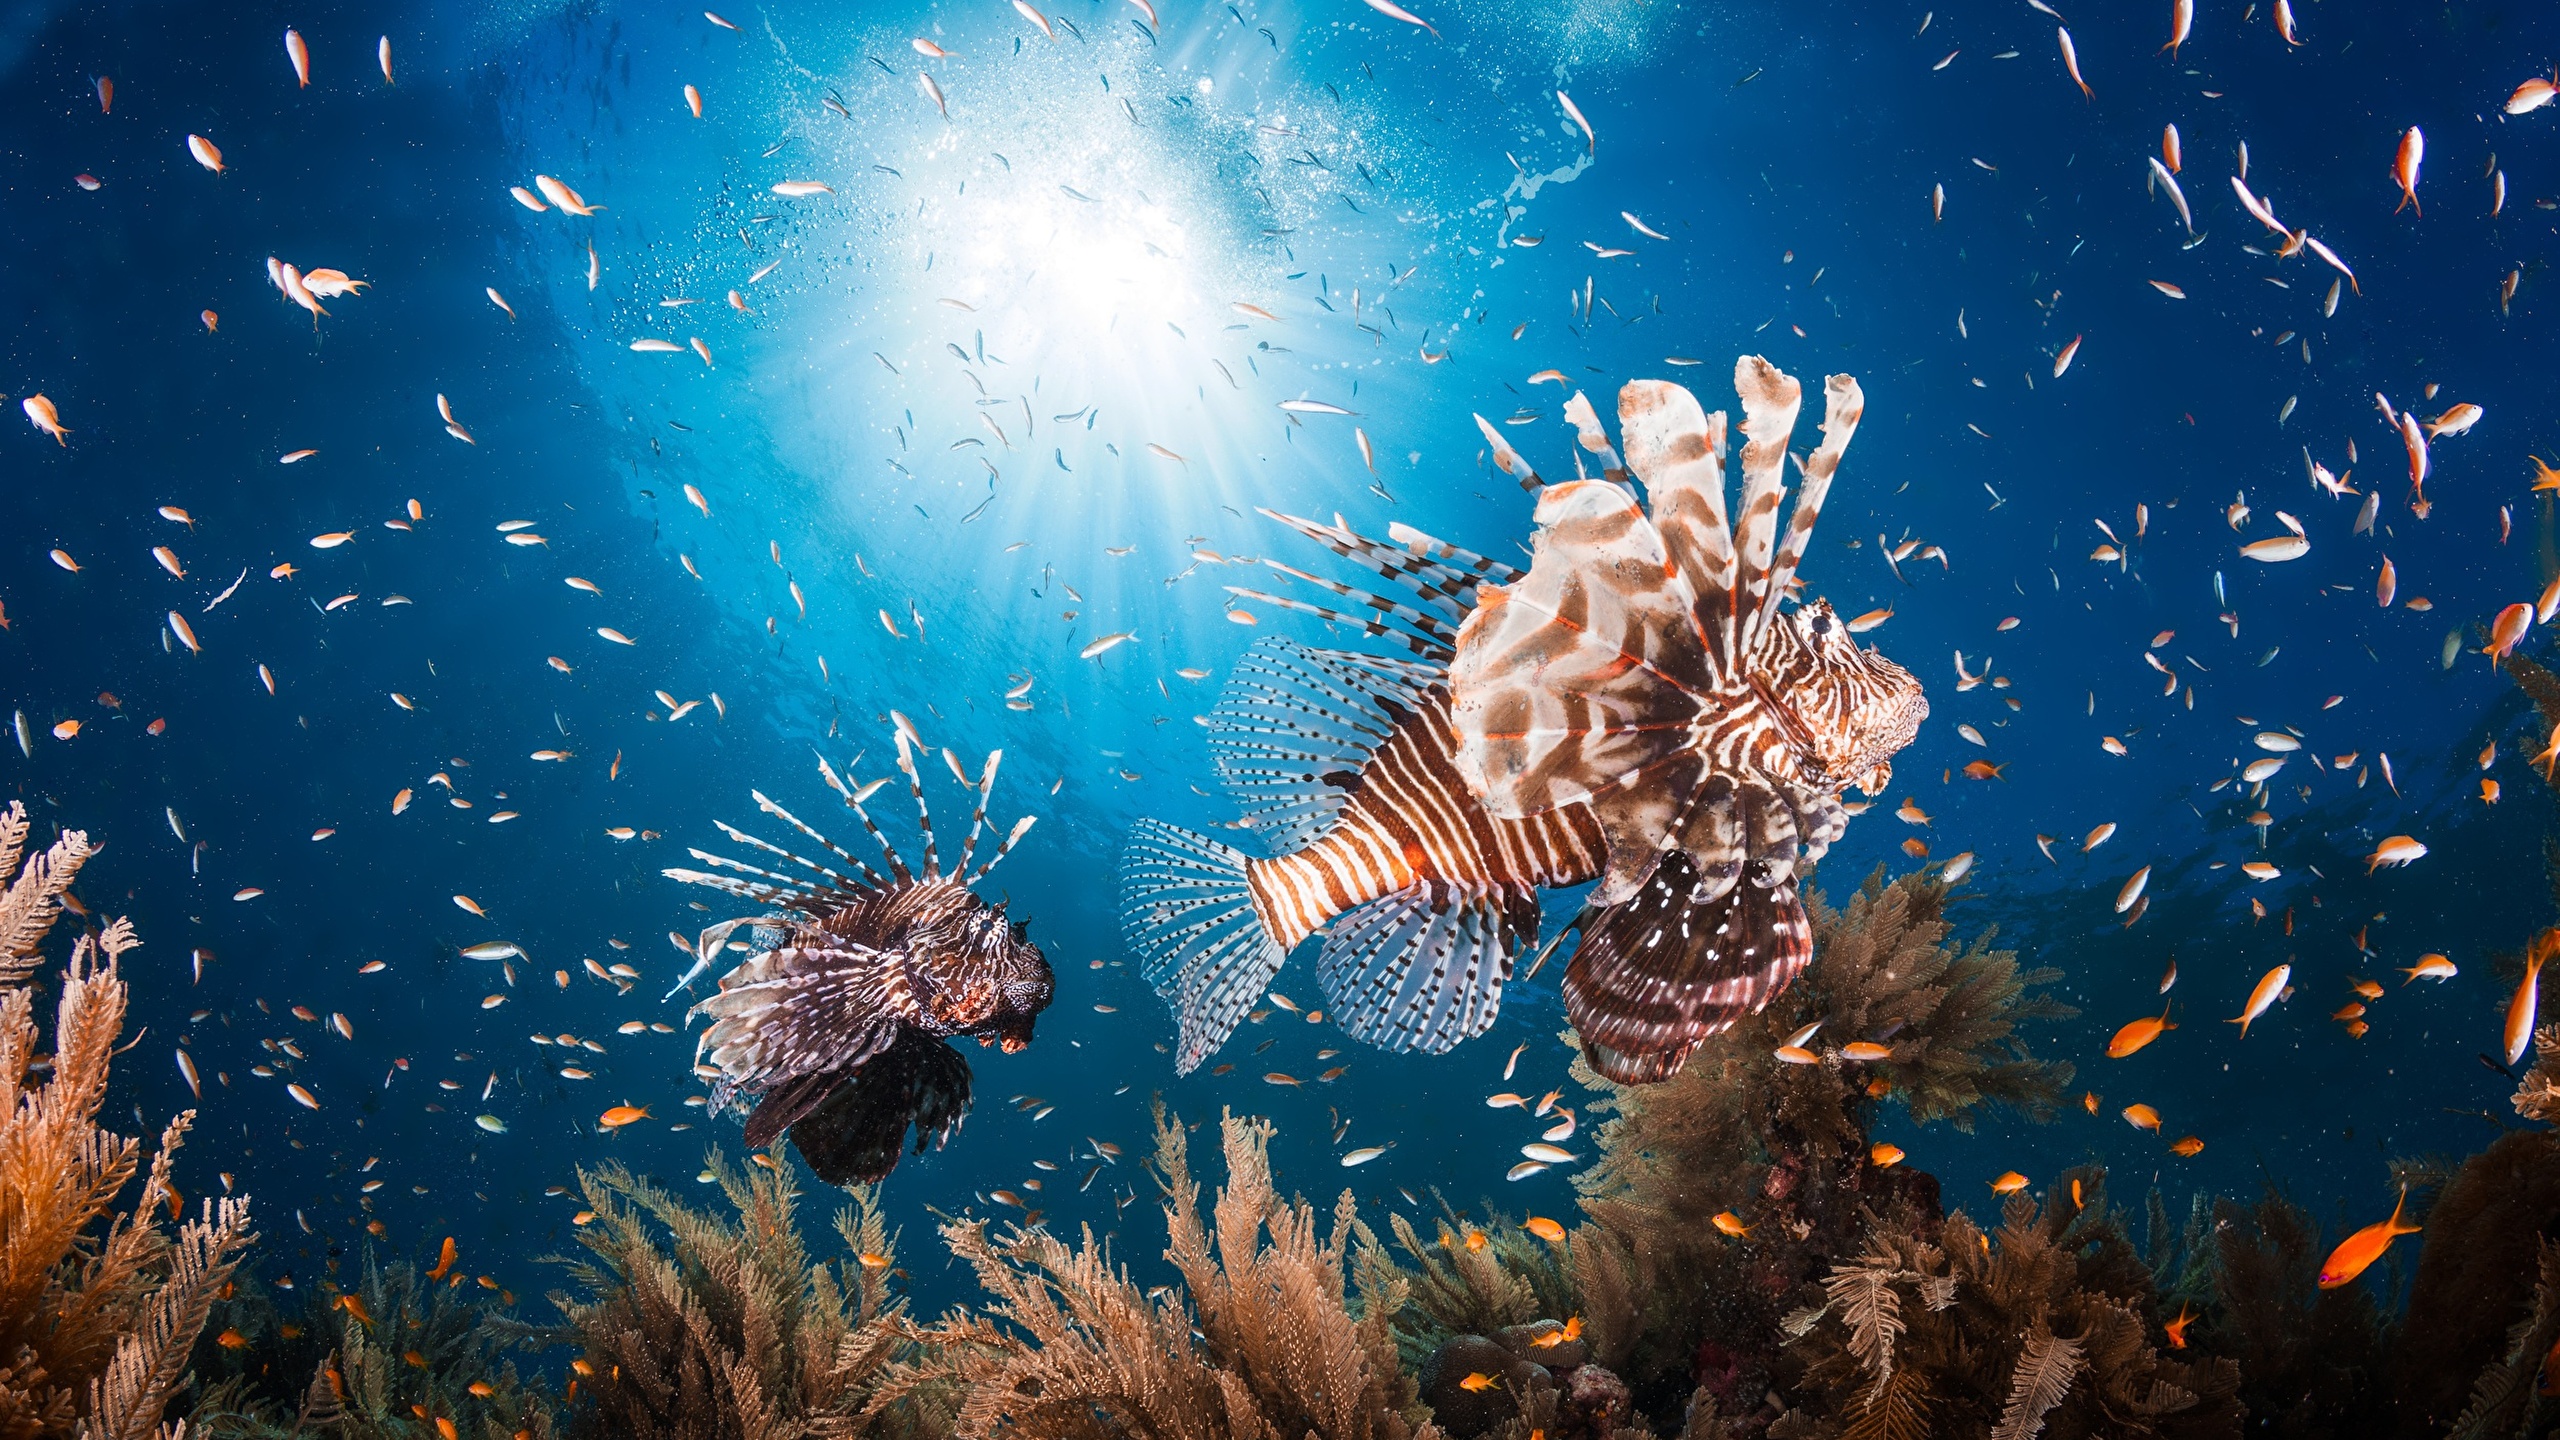 壁紙 2560x1440 海底世界 鱼 獅子魚 動物 下载 照片